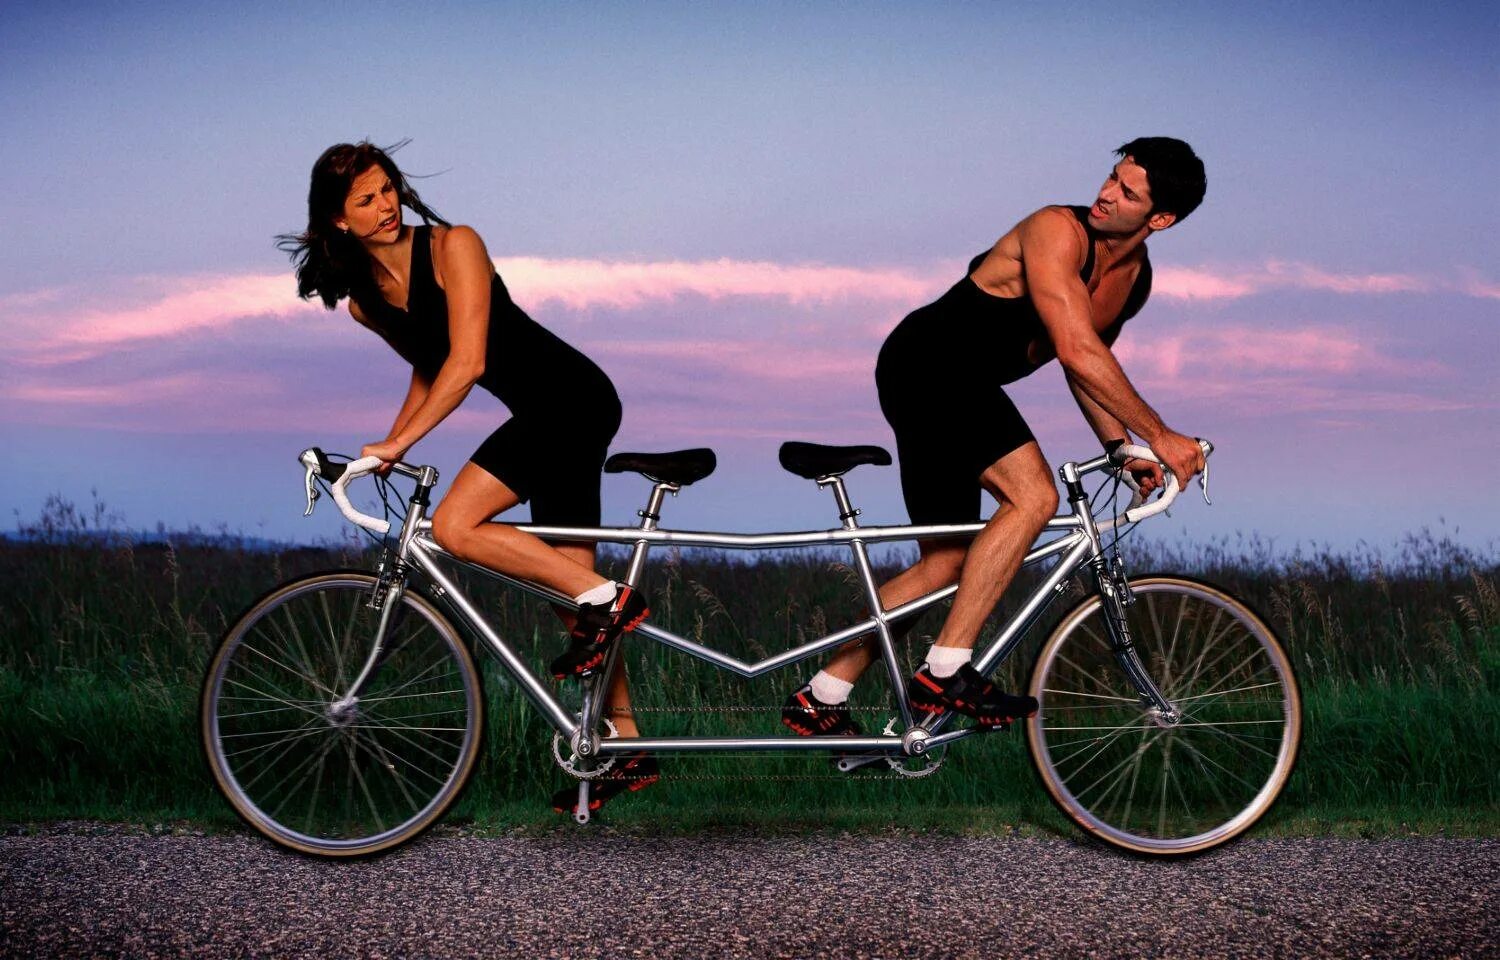 Мужчина иженшина на велосипеде. Парень с девушкой на велосипеде. Велосипед для двоих. Женщина на велосипеде. Сайт для реальных отношений